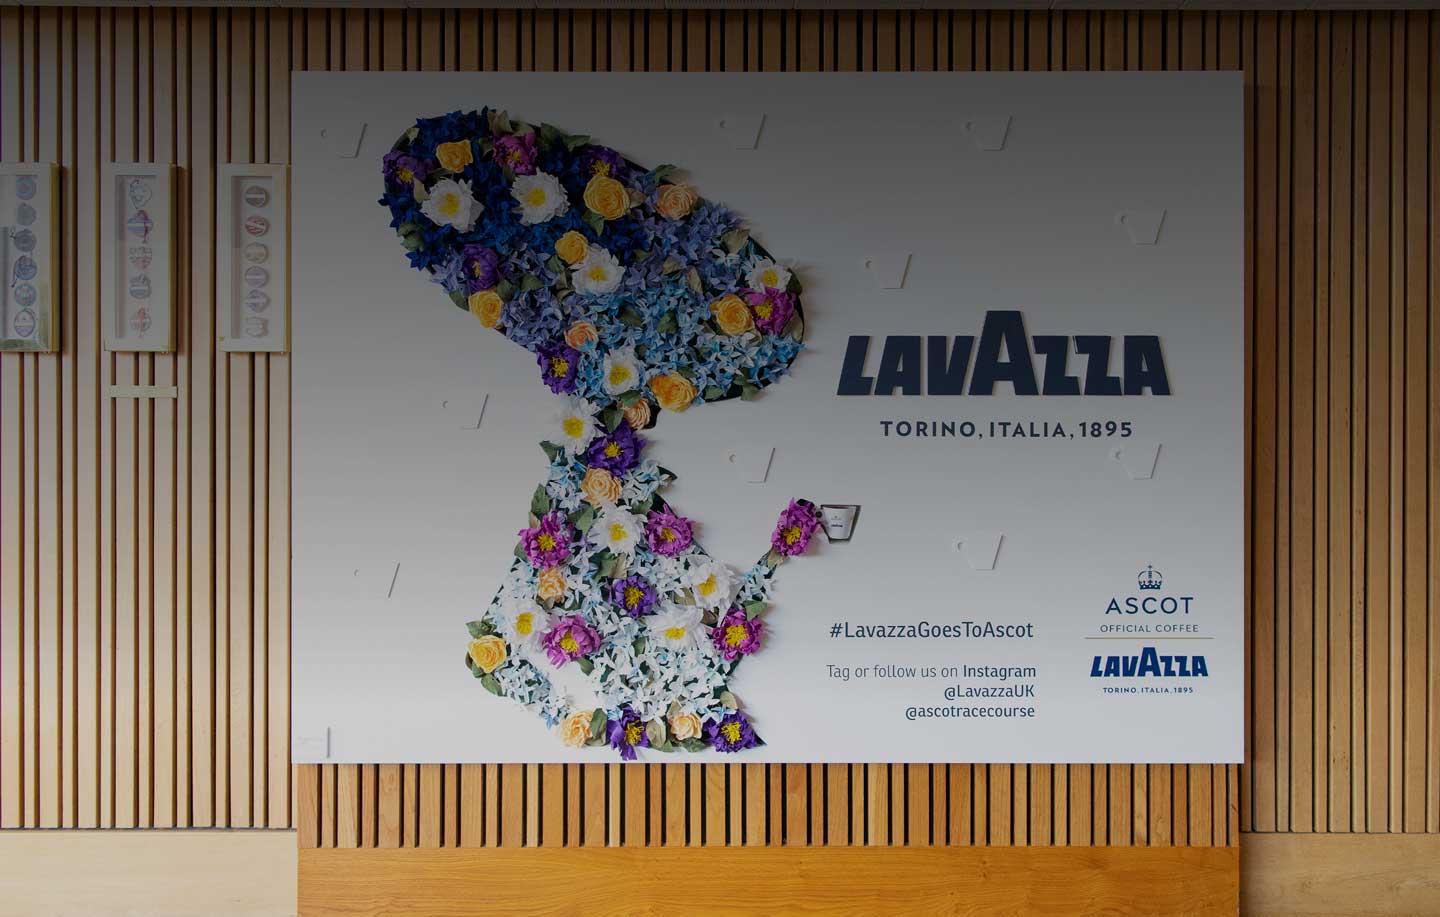 Royal Ascot og Lavazza: deler de samme værdier